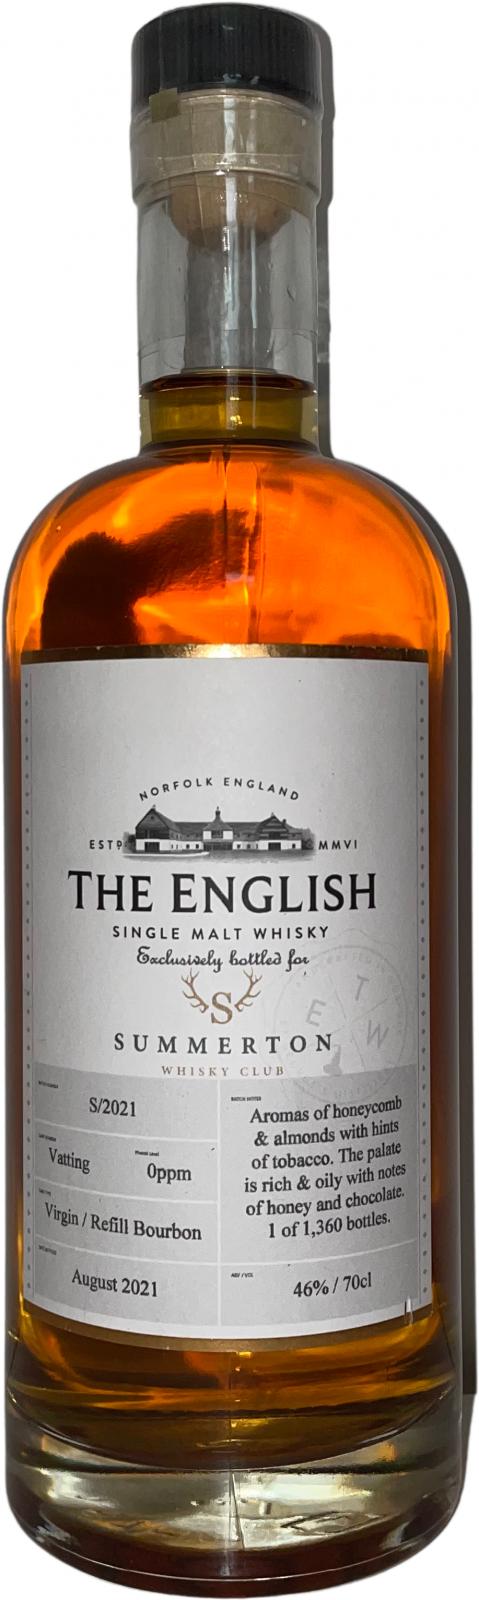 The English Whisky Single Malt Whisky